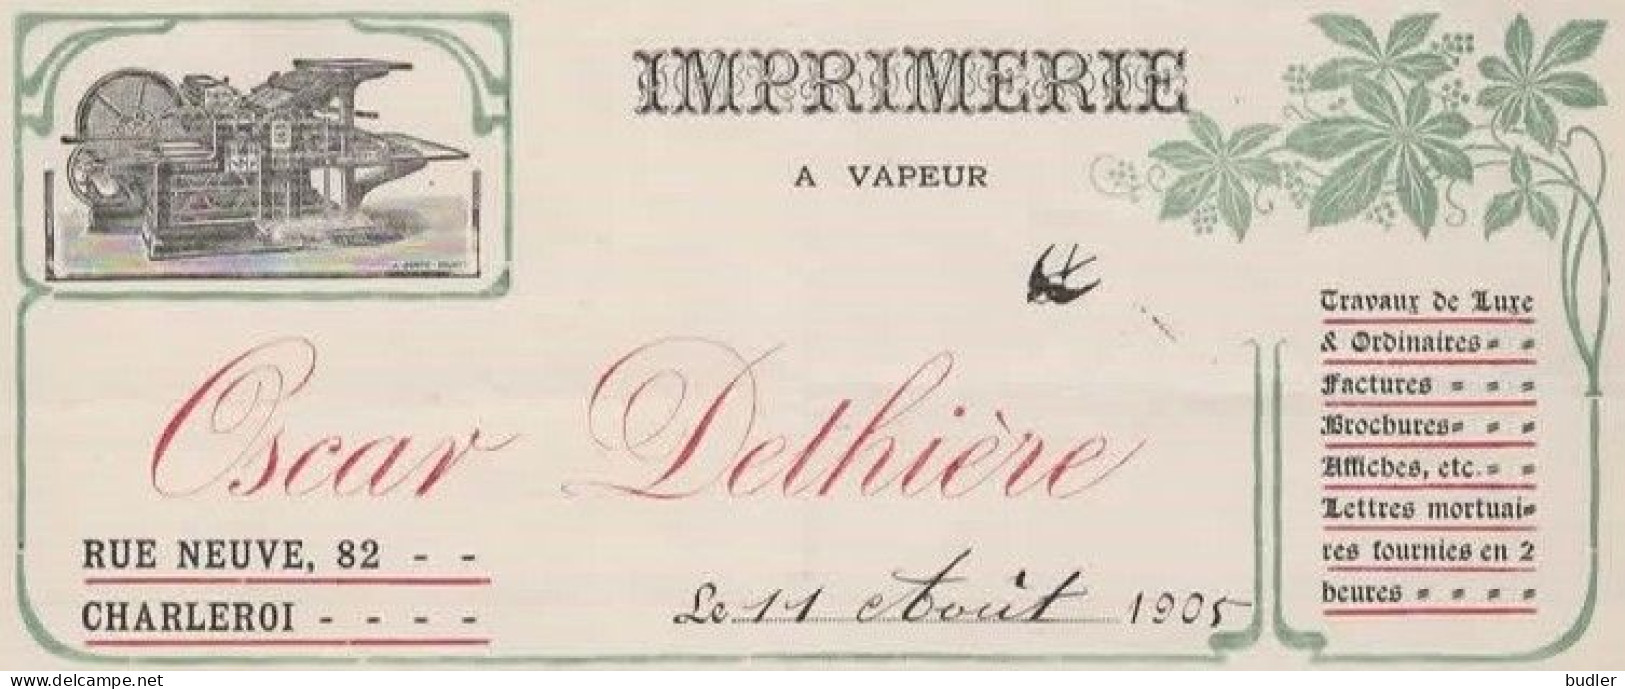 ART NOUVEAU / JUGENDSTIL 1905:Factuur Van/Facture De  ##Imprimerie à Vapeur OSCAR DETHIÈRE, Rue Neuve, 82, CHARLEROI##. - Printing & Stationeries